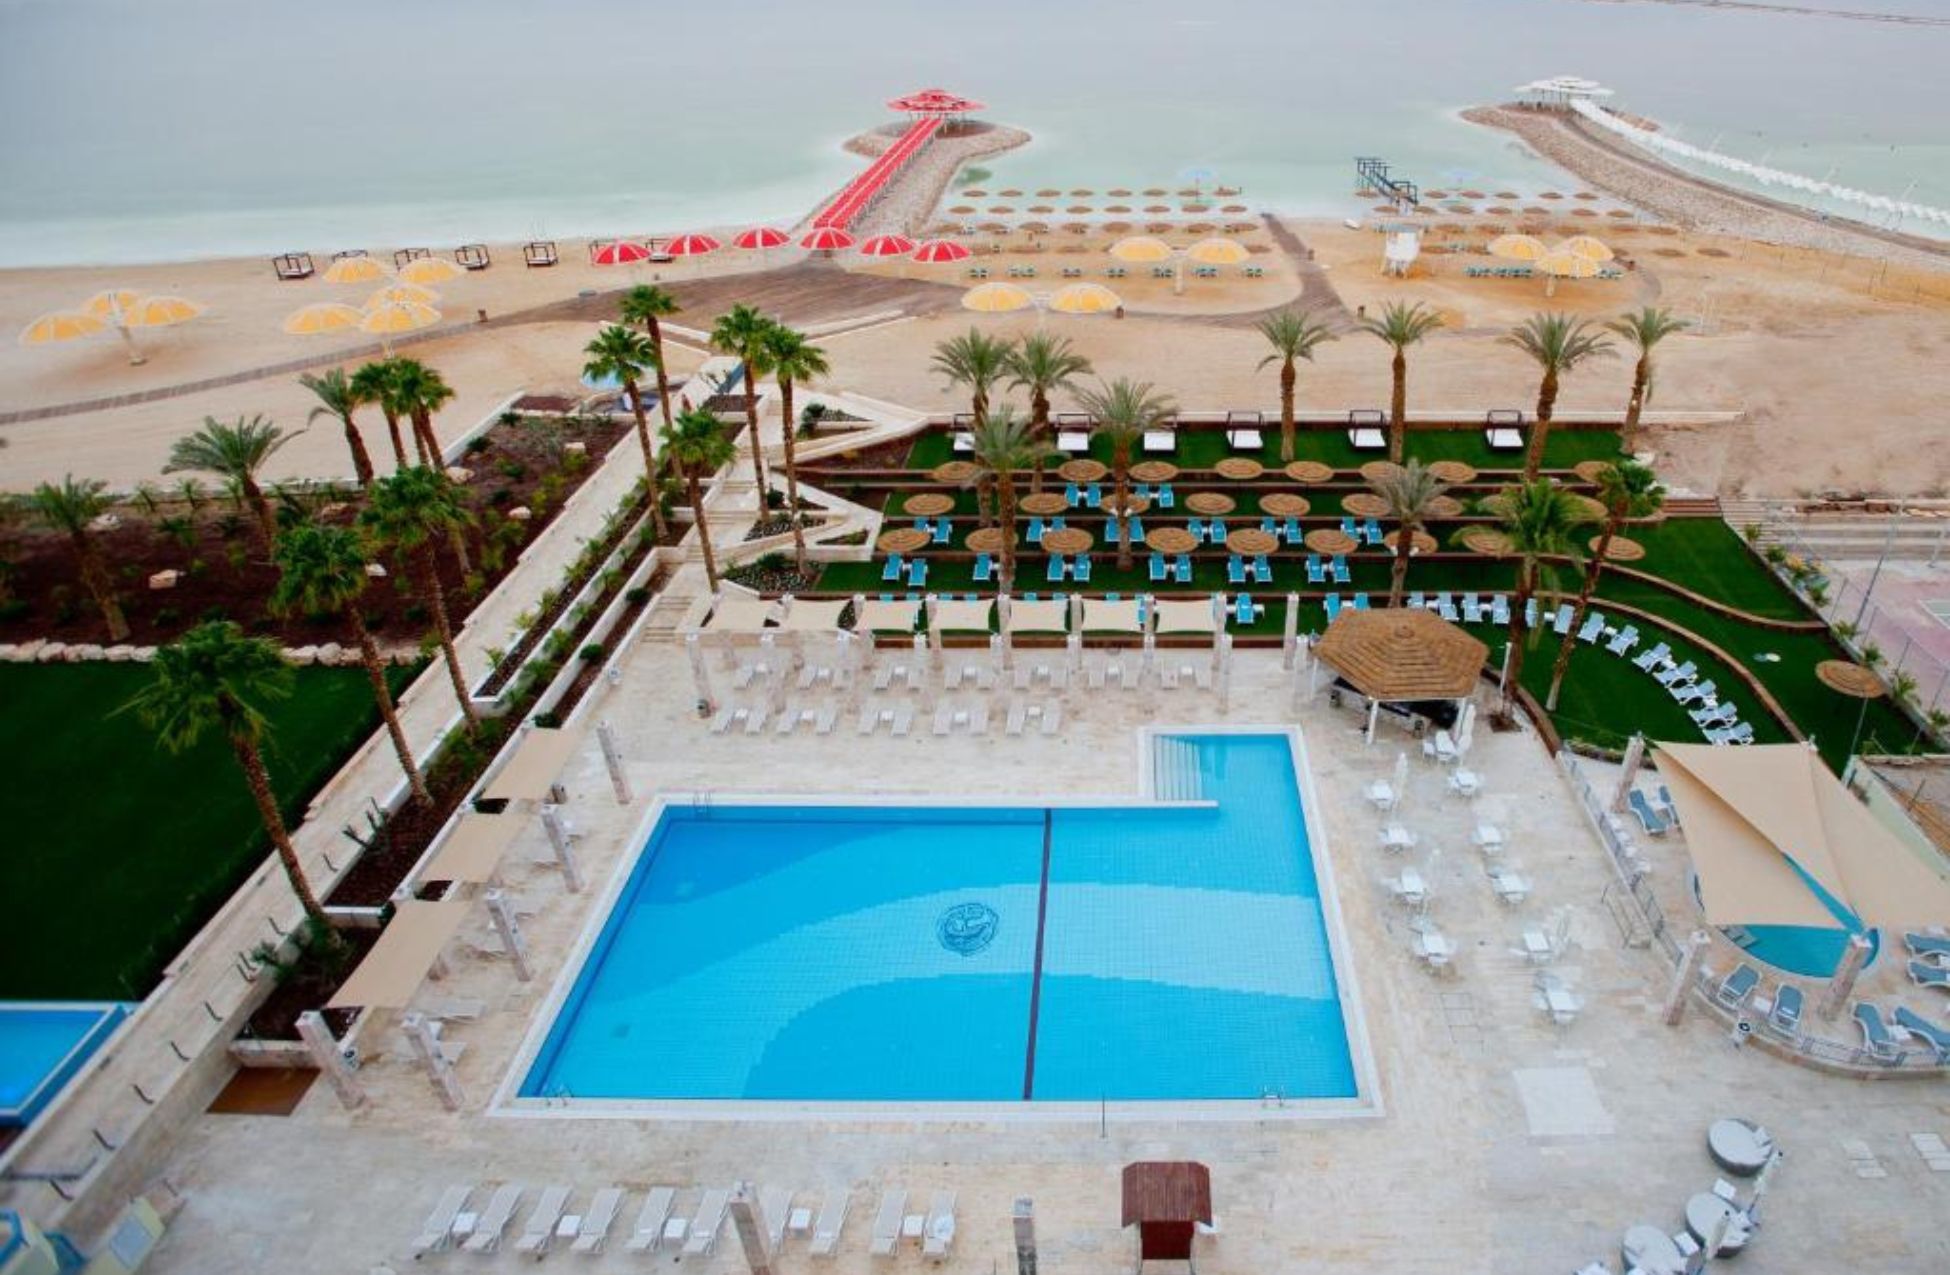 Herods Hotel Dead Sea - Best Hotels In the Dead Sea